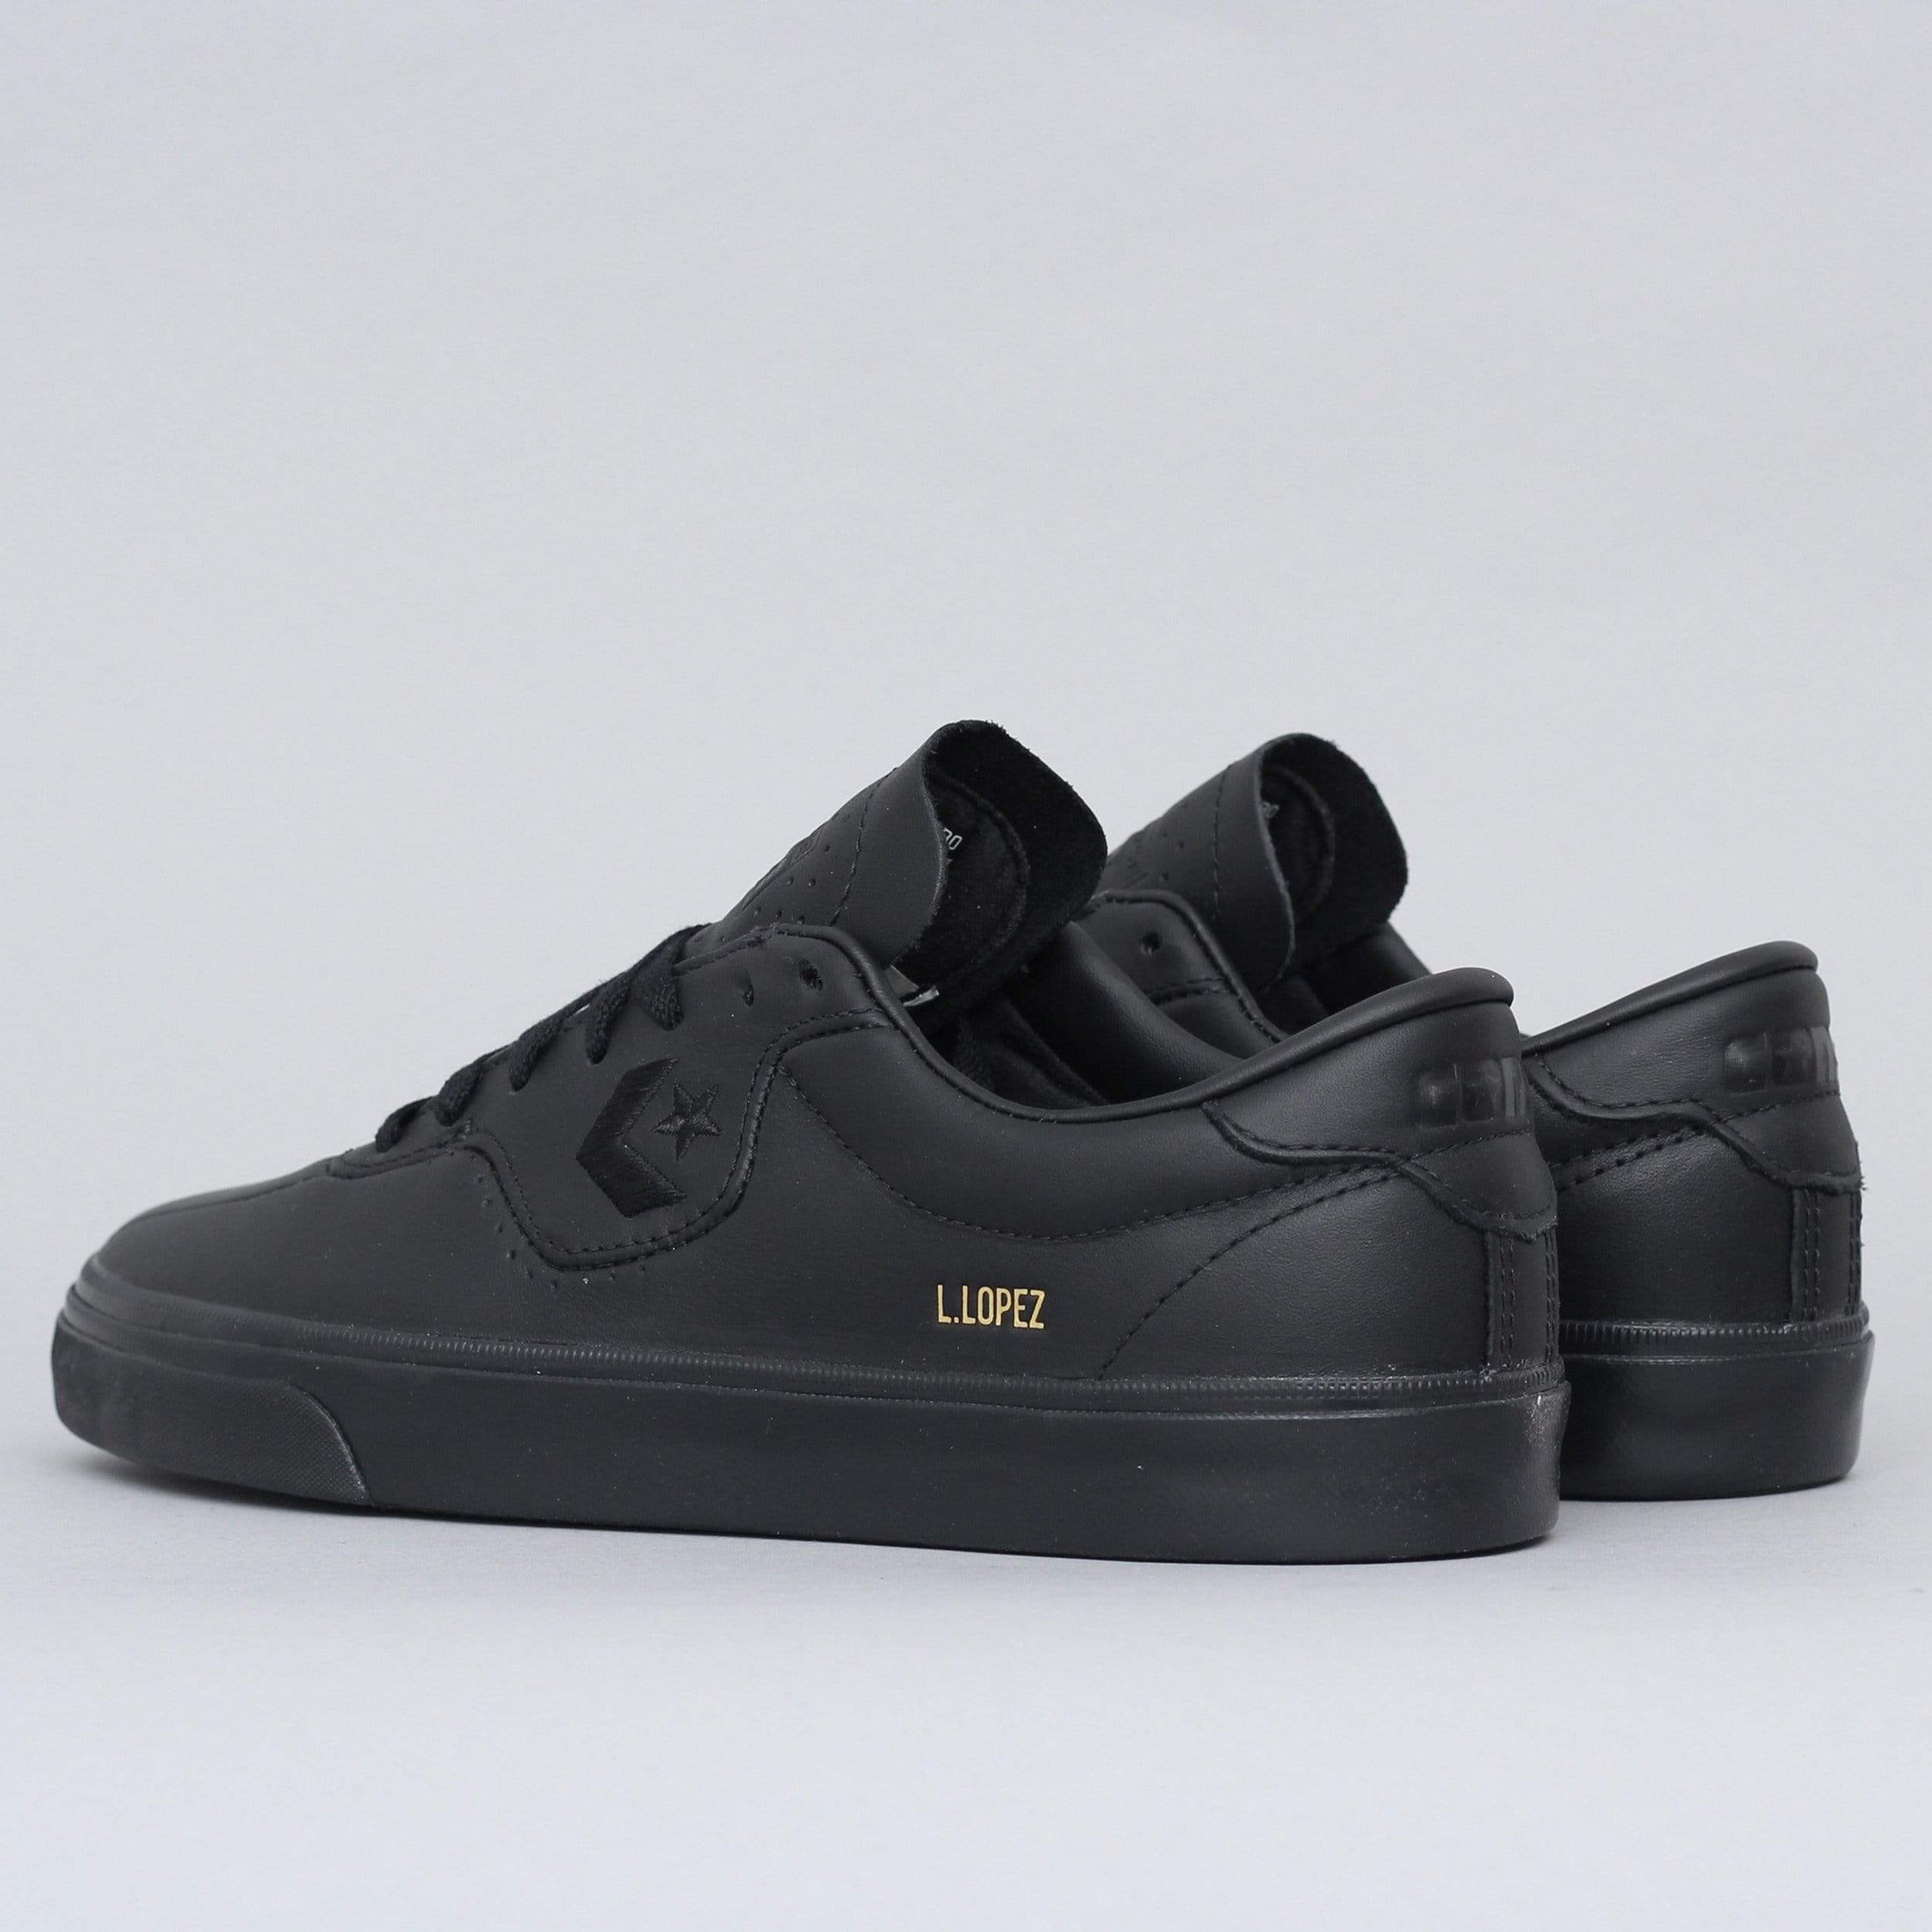 Converse Louie Lopez Pro Leather OX Shoes Black / Black / Black